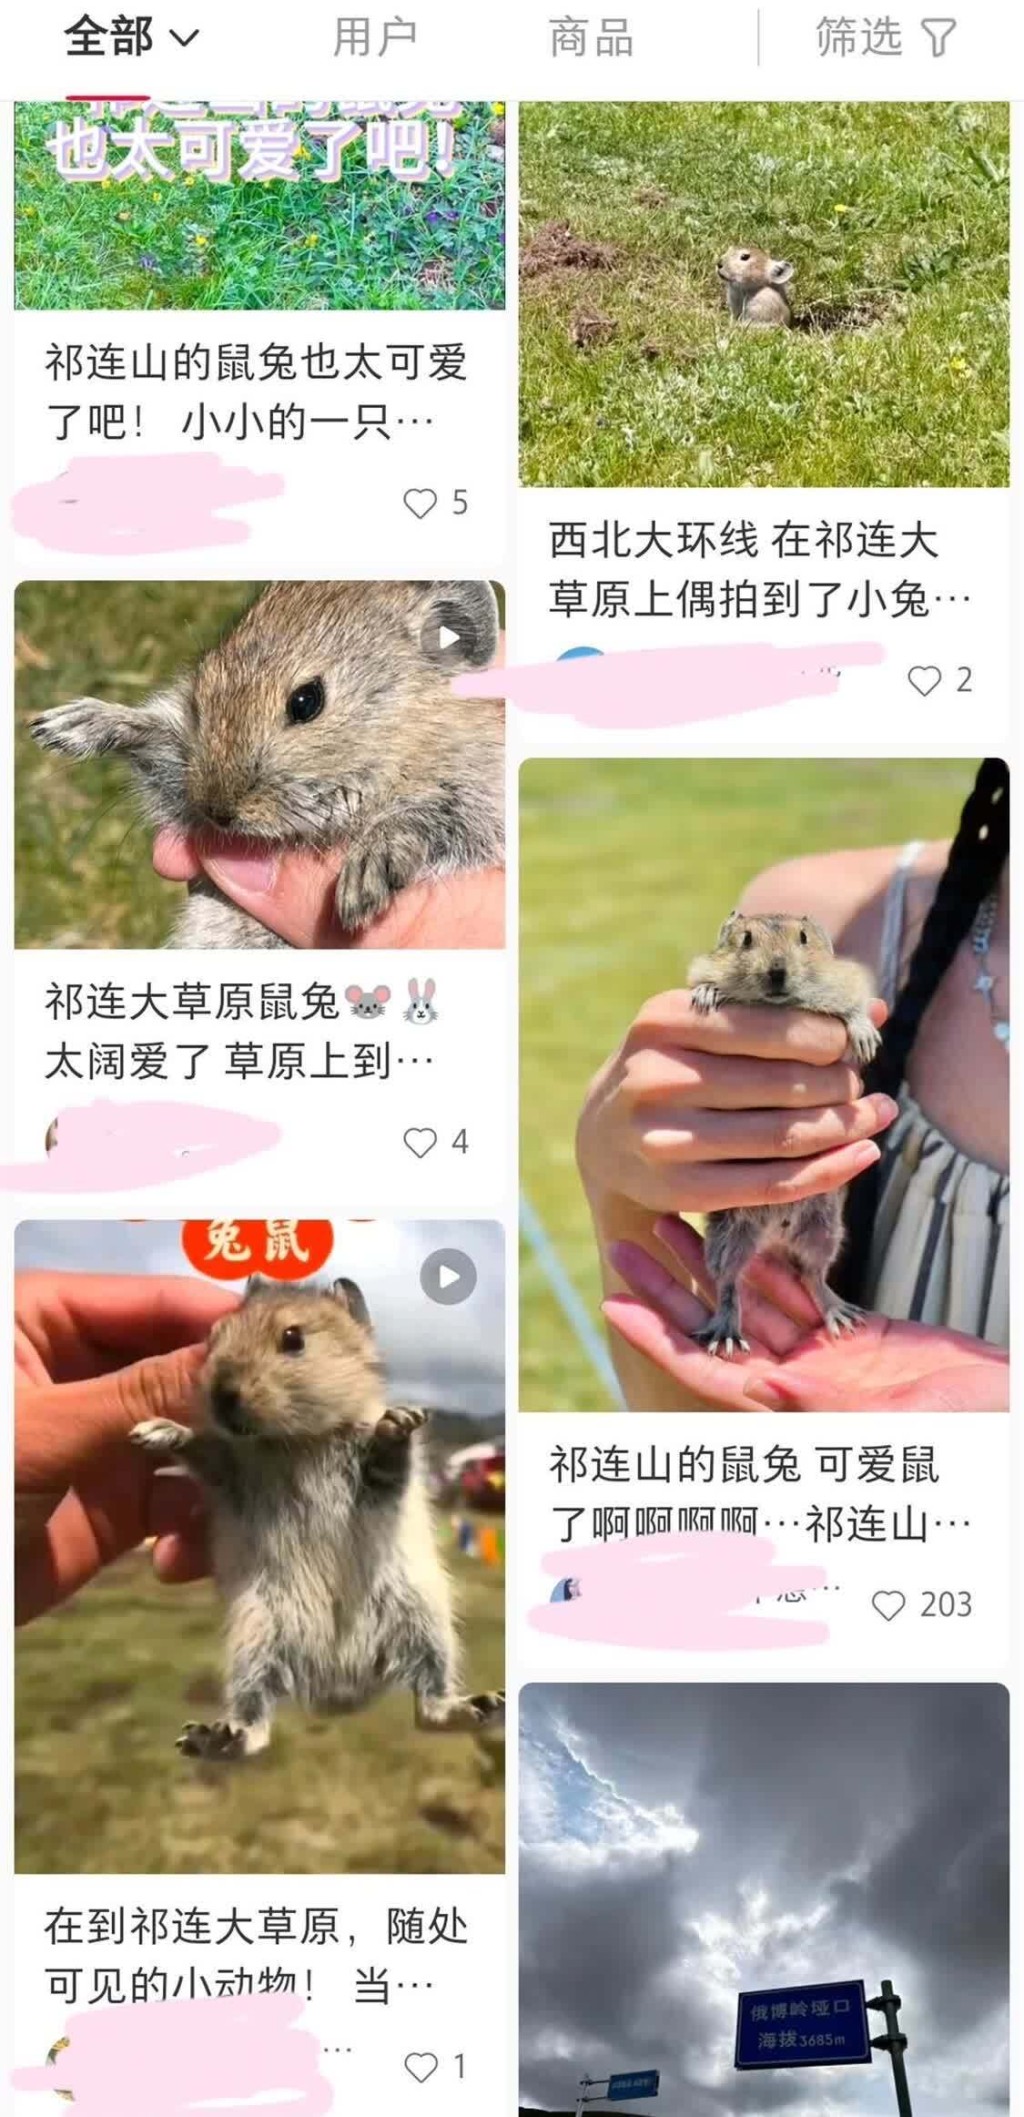 遊客在社交平台曬出手持高原鼠兔的圖片。